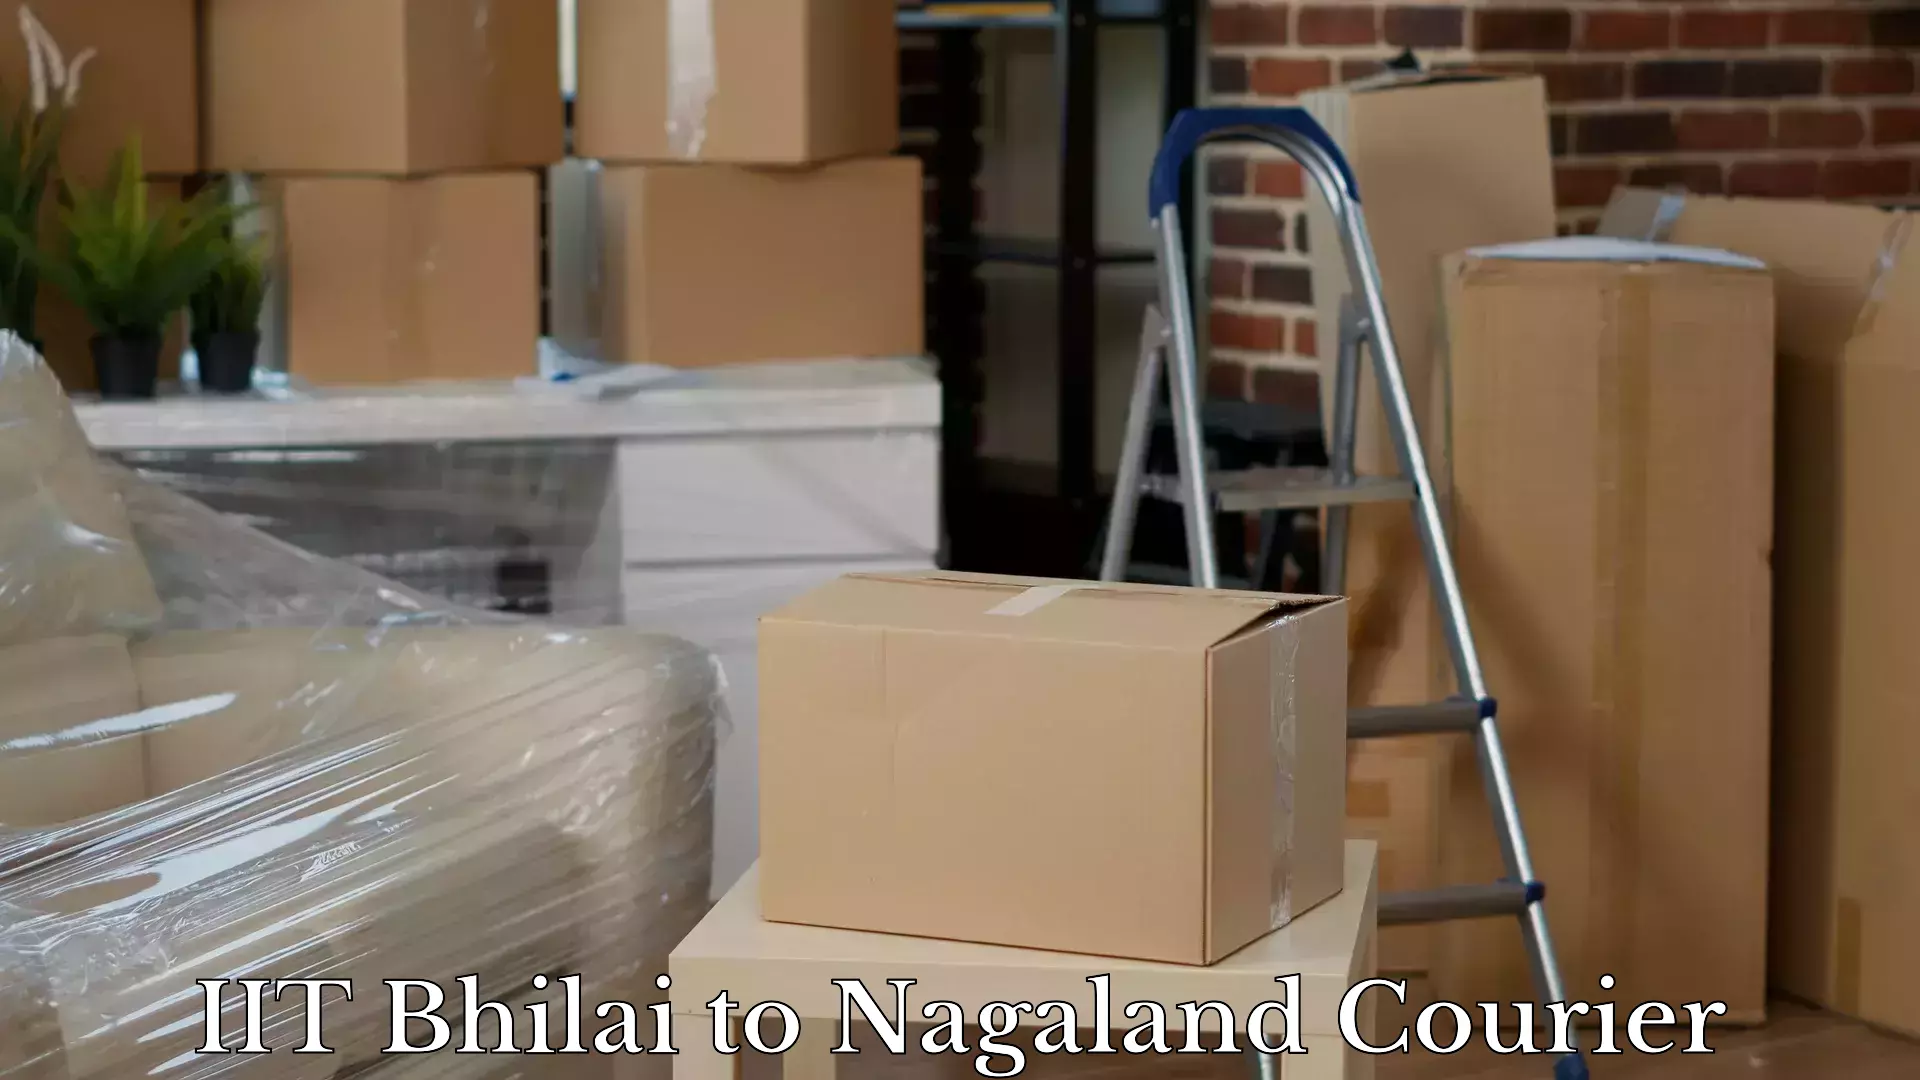 Doorstep luggage pickup IIT Bhilai to Nagaland